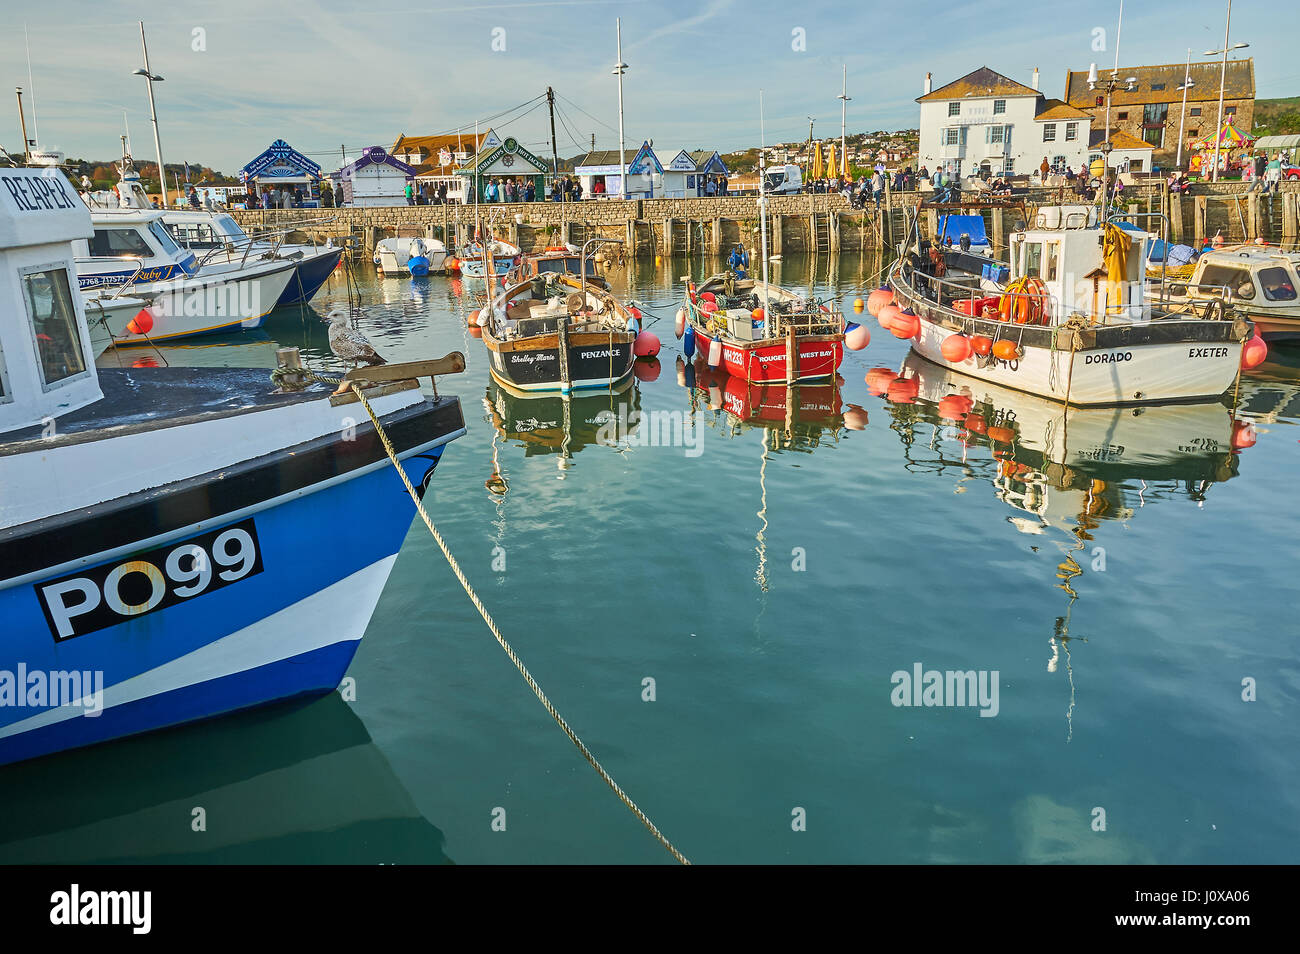 Alta Marea, barche da pesca e le navi per la pesca a strascico nella piccola località balneare di West Bay su Dorset la Jurassic Coast. Foto Stock